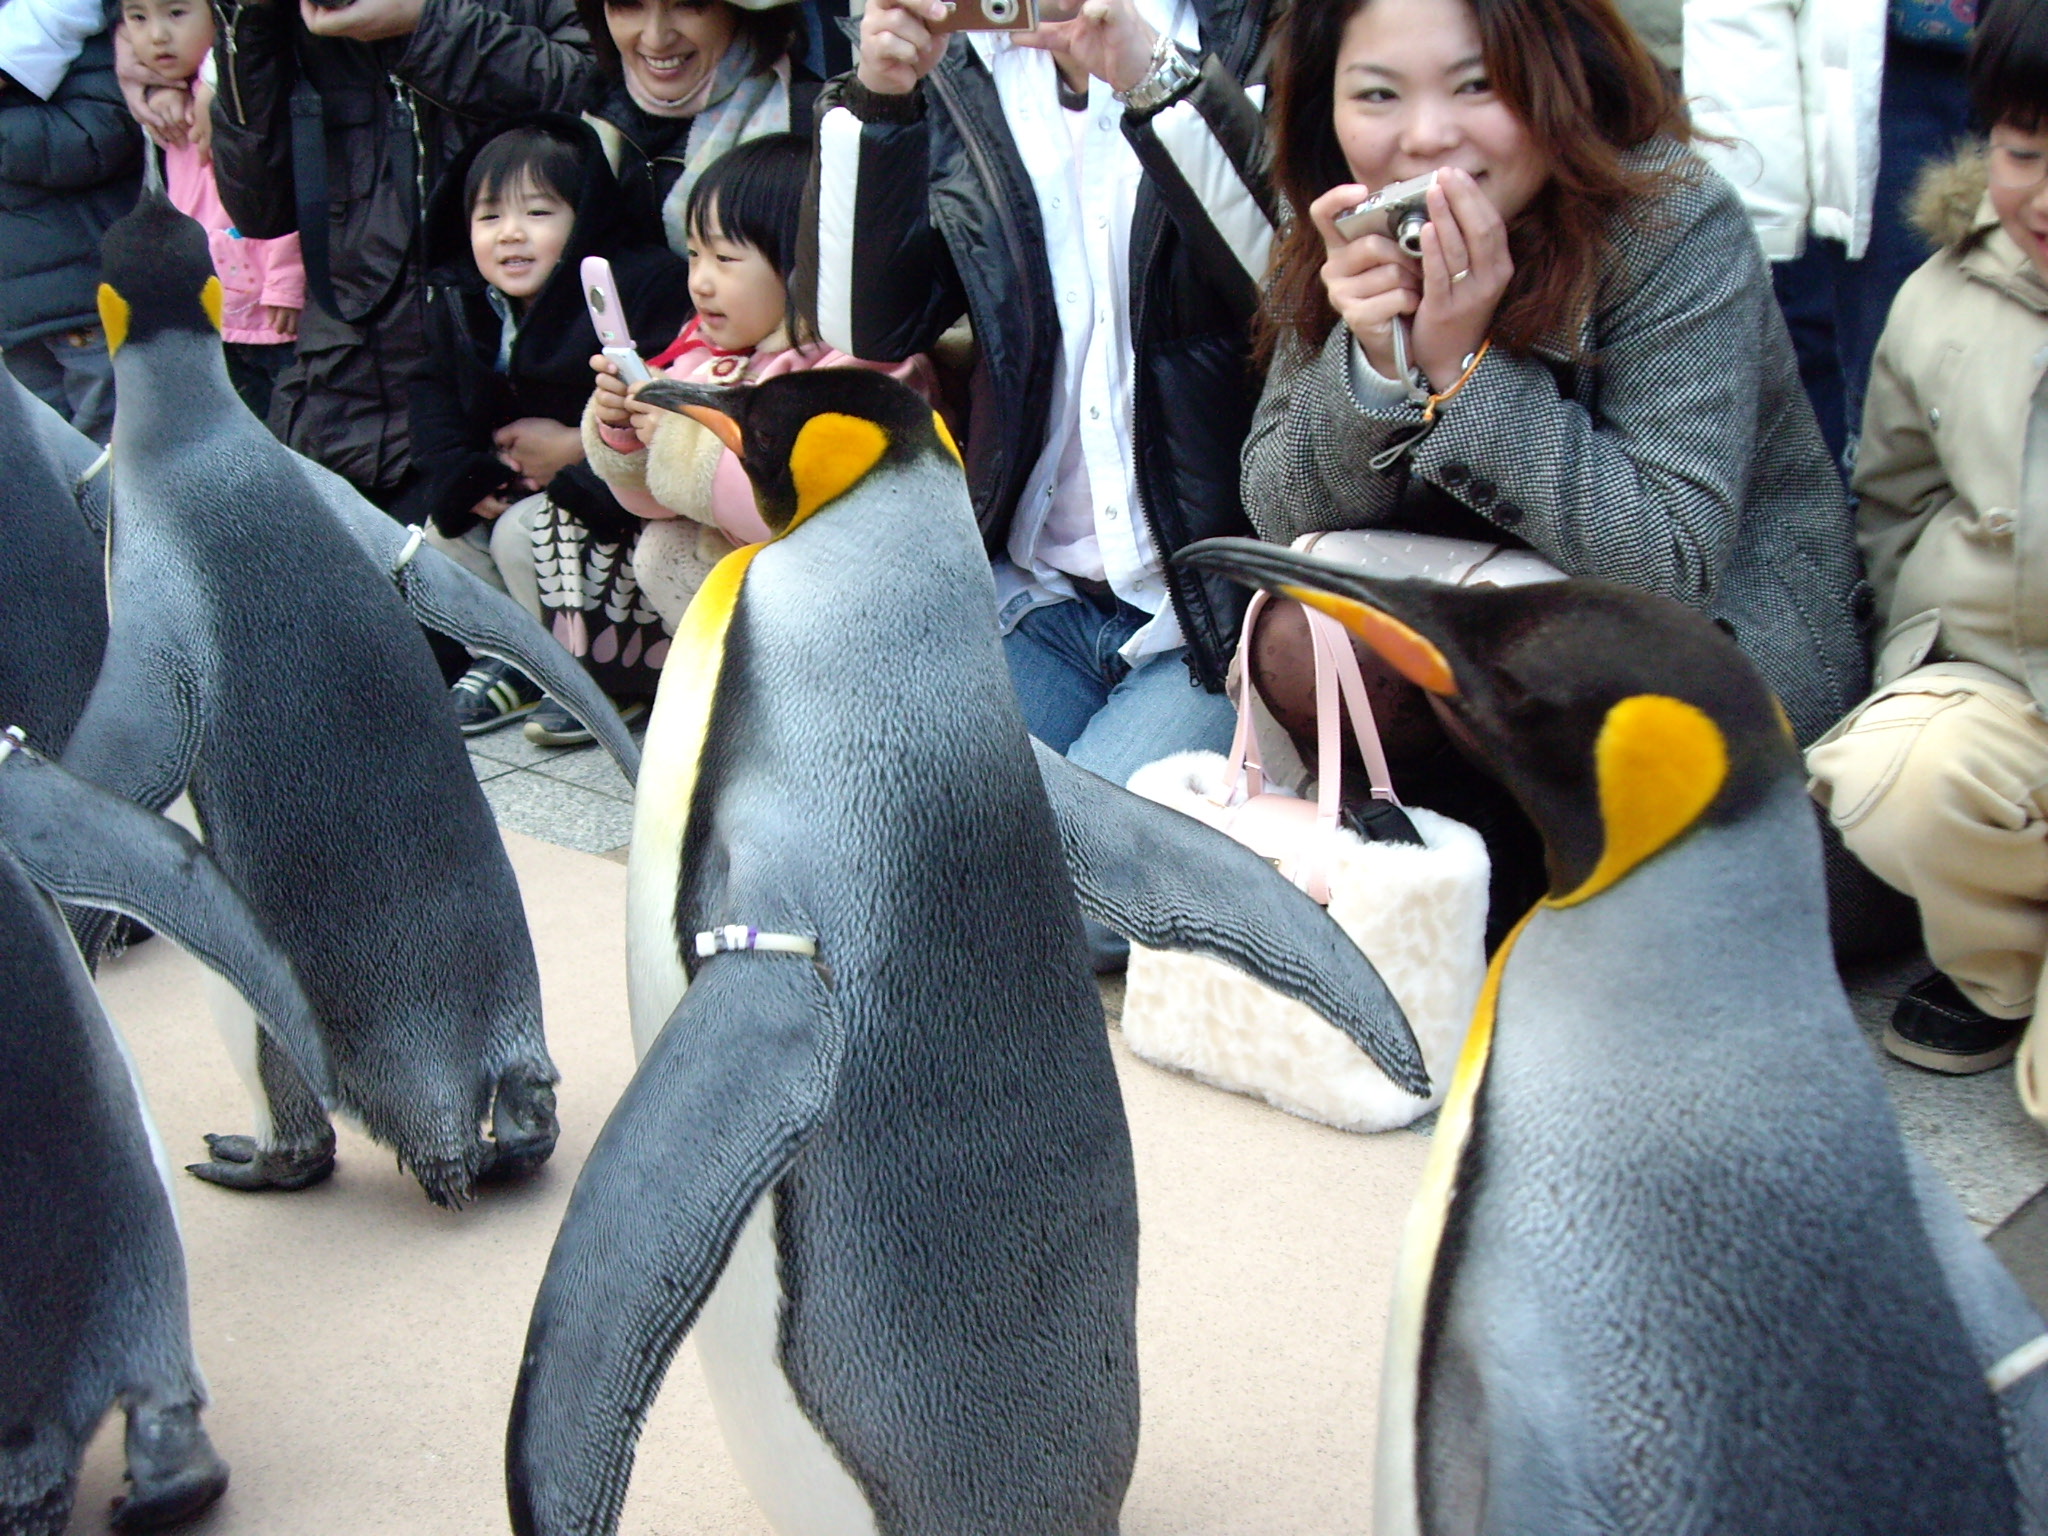 小ネタで恐縮です ペンギンパレード 続報 動物園 水族館 植物園についてのお話です